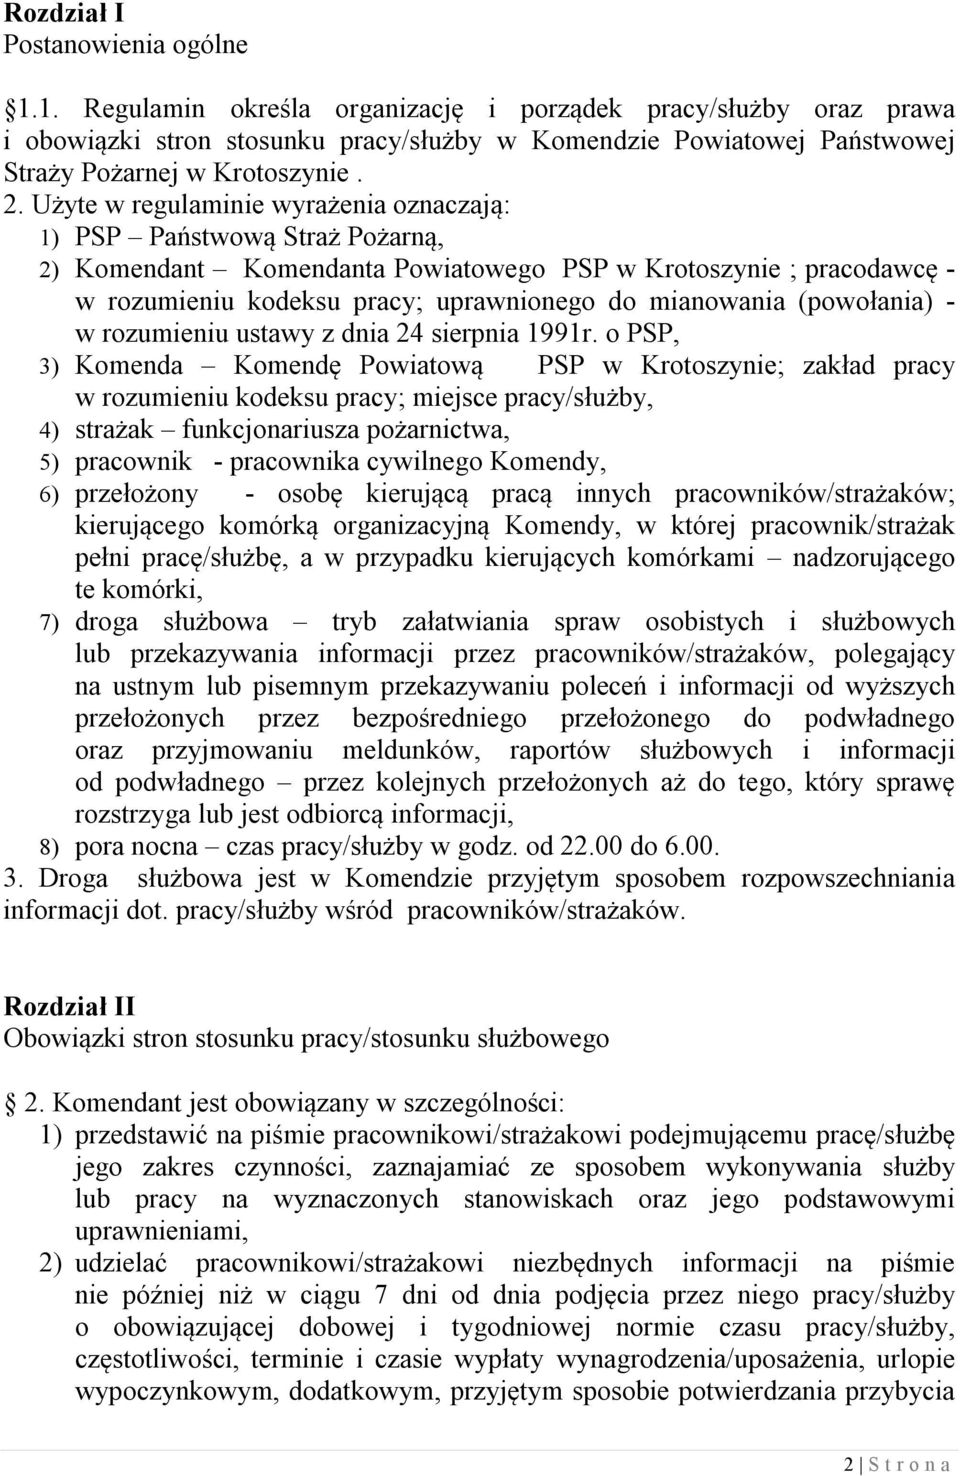 Użyte w regulaminie wyrażenia oznaczają: 1) PSP Państwową Straż Pożarną, 2) Komendant Komendanta Powiatowego PSP w Krotoszynie ; pracodawcę - w rozumieniu kodeksu pracy; uprawnionego do mianowania